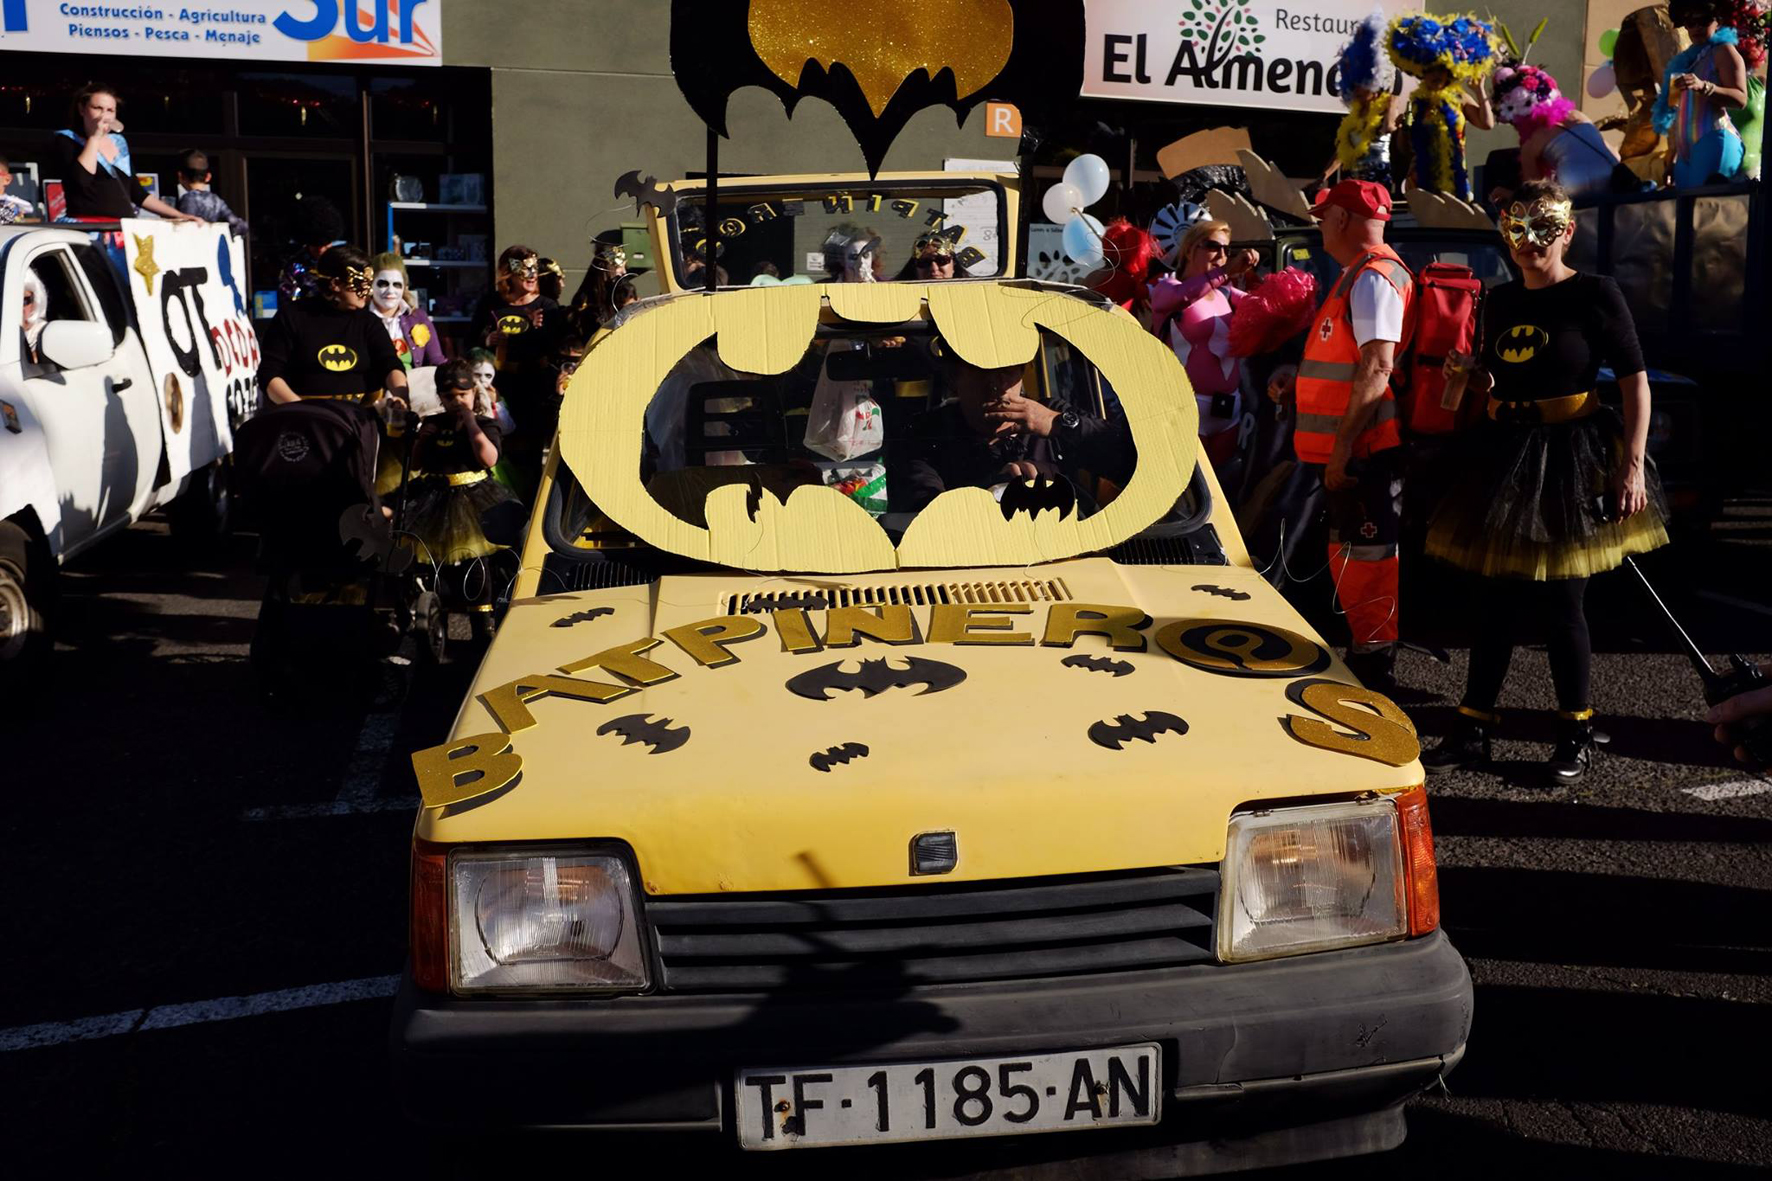 El Pinar abre la inscripción para las carrozas del Carnaval hasta el 11 de marzo